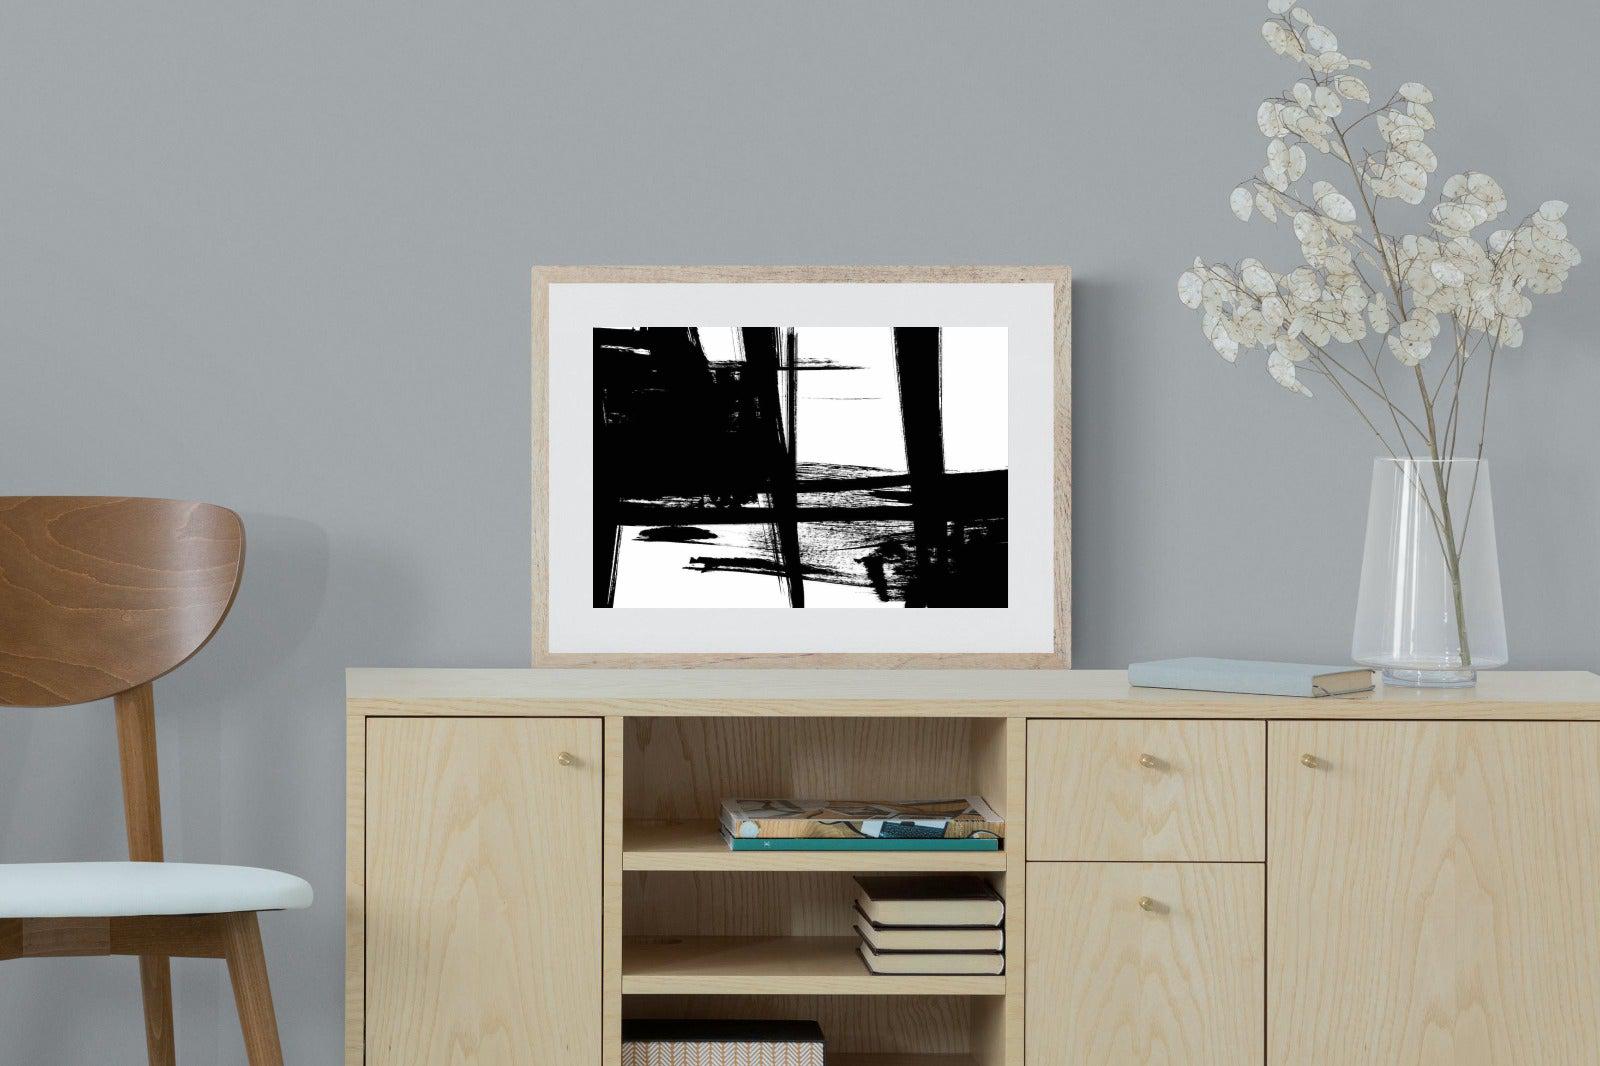 Hijinks-Wall_Art-60 x 45cm-Framed Print-Wood-Pixalot